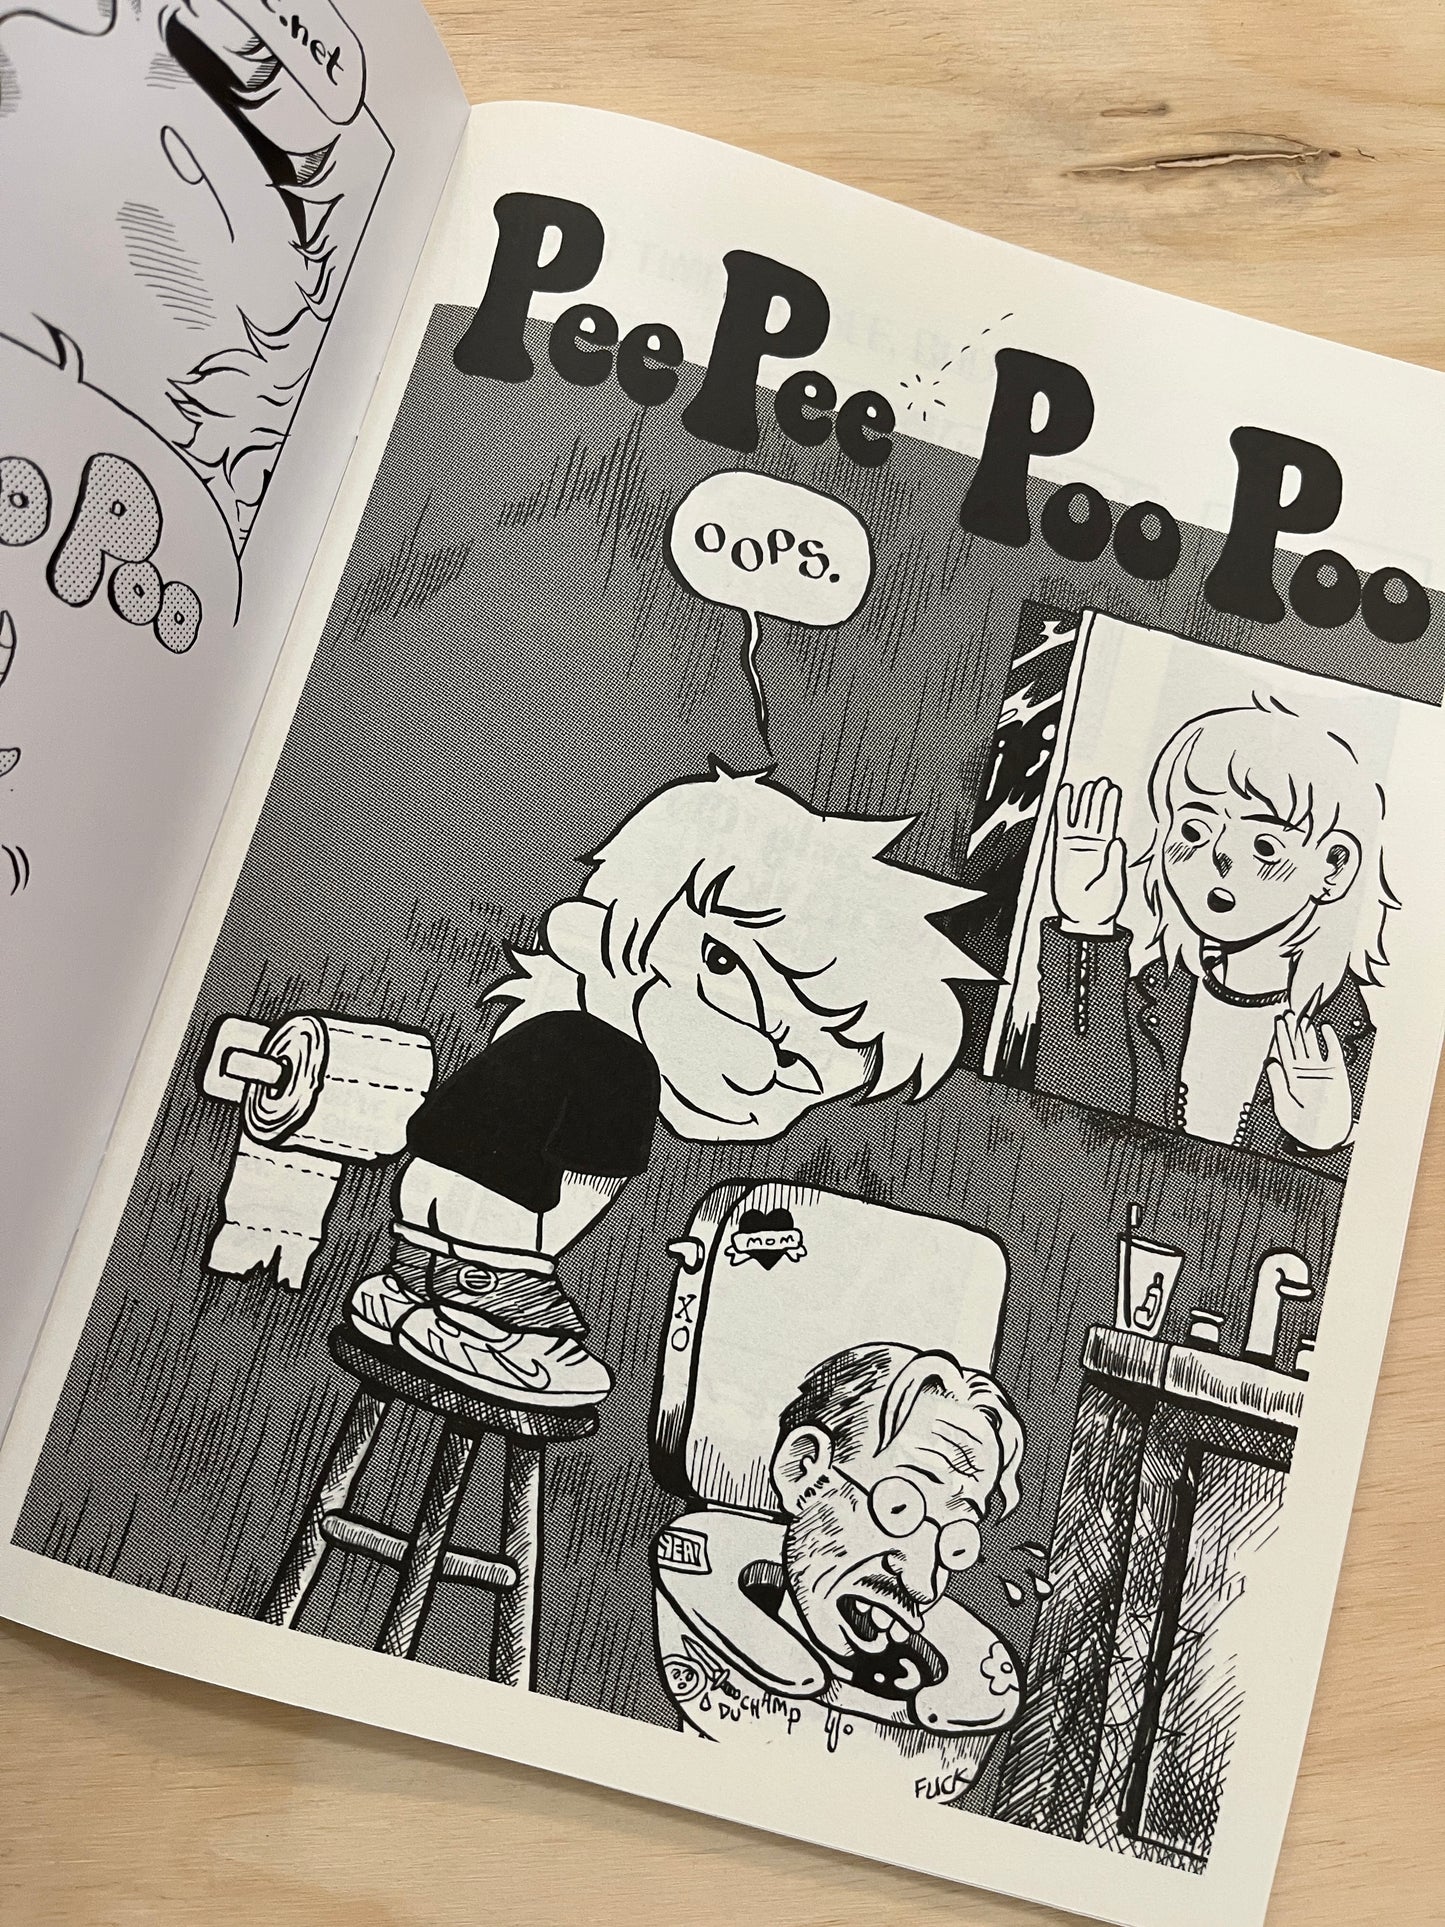 Pee Pee Poo Poo #69